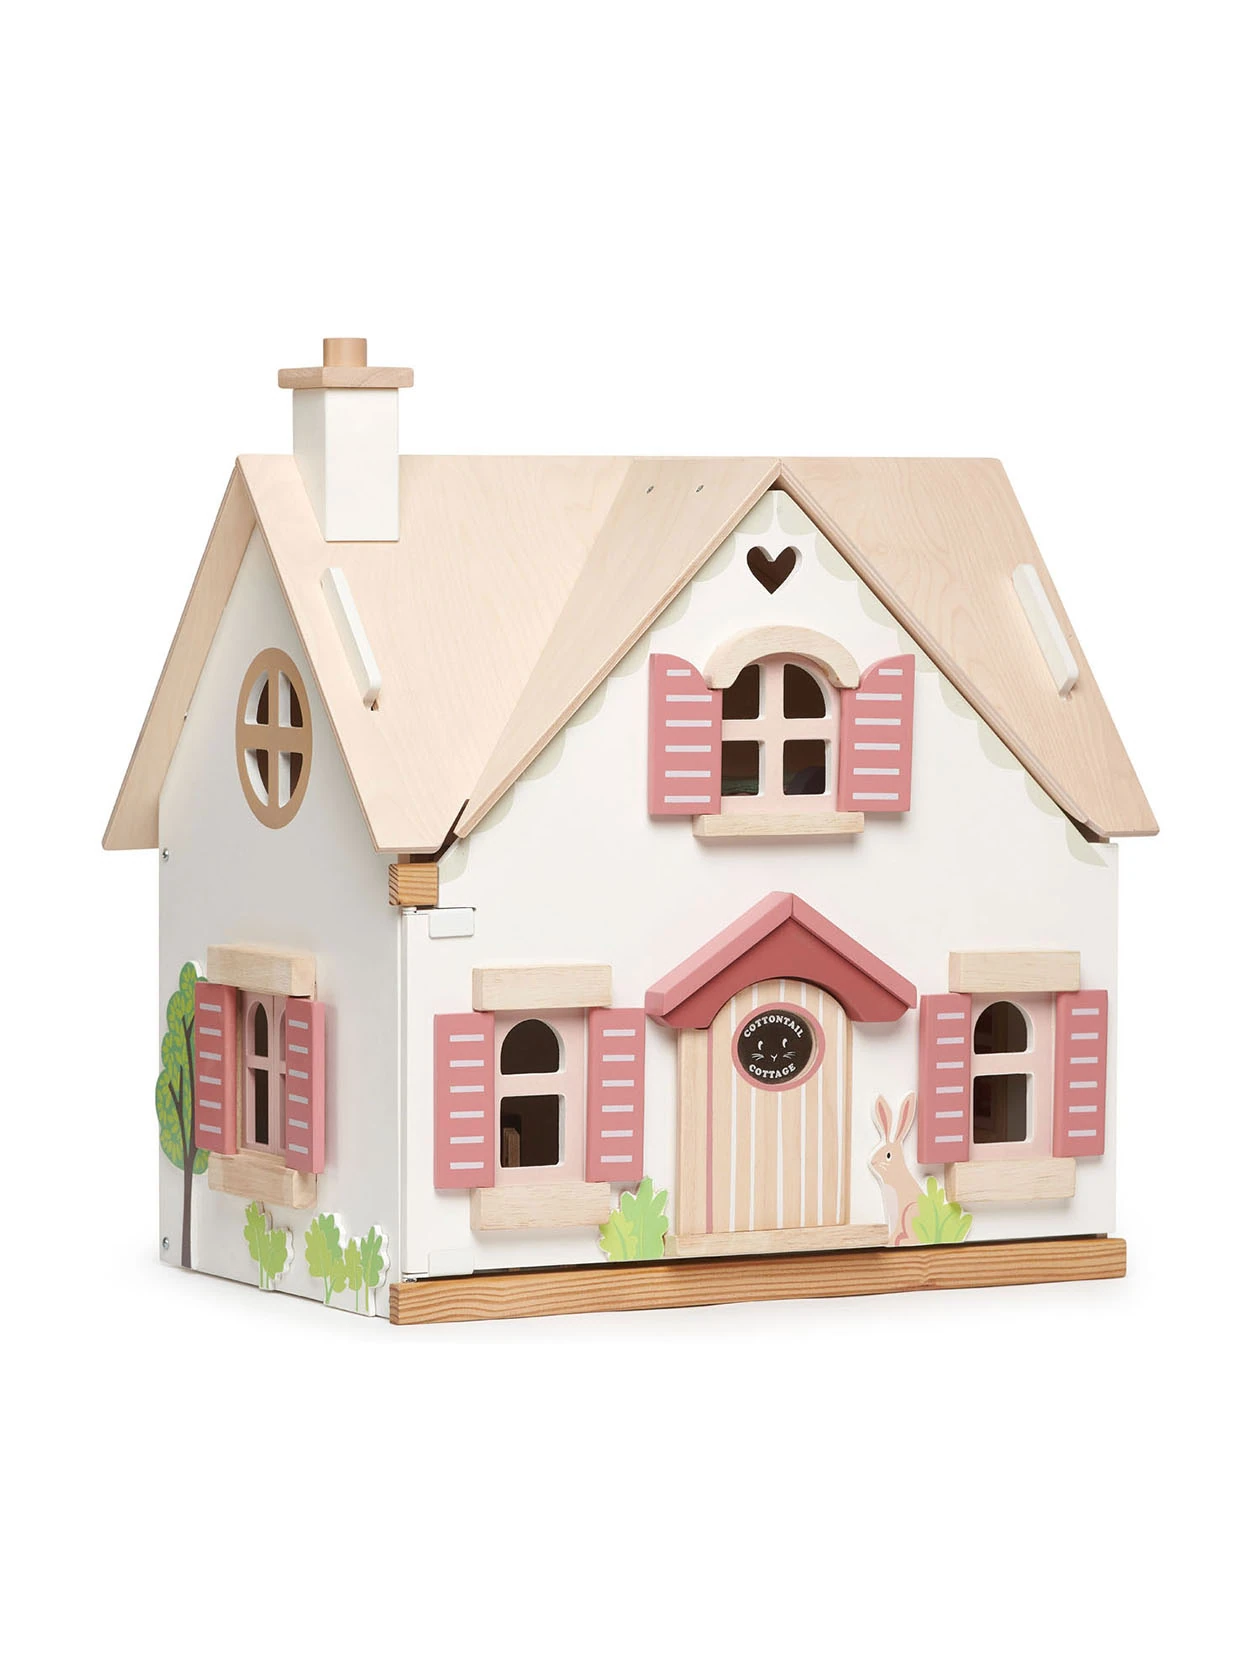 Drewniany domek dla lalek z różowymi okiennicami i różowymi drzwiami. Doskonała zabawka dla małych dziewczynek!